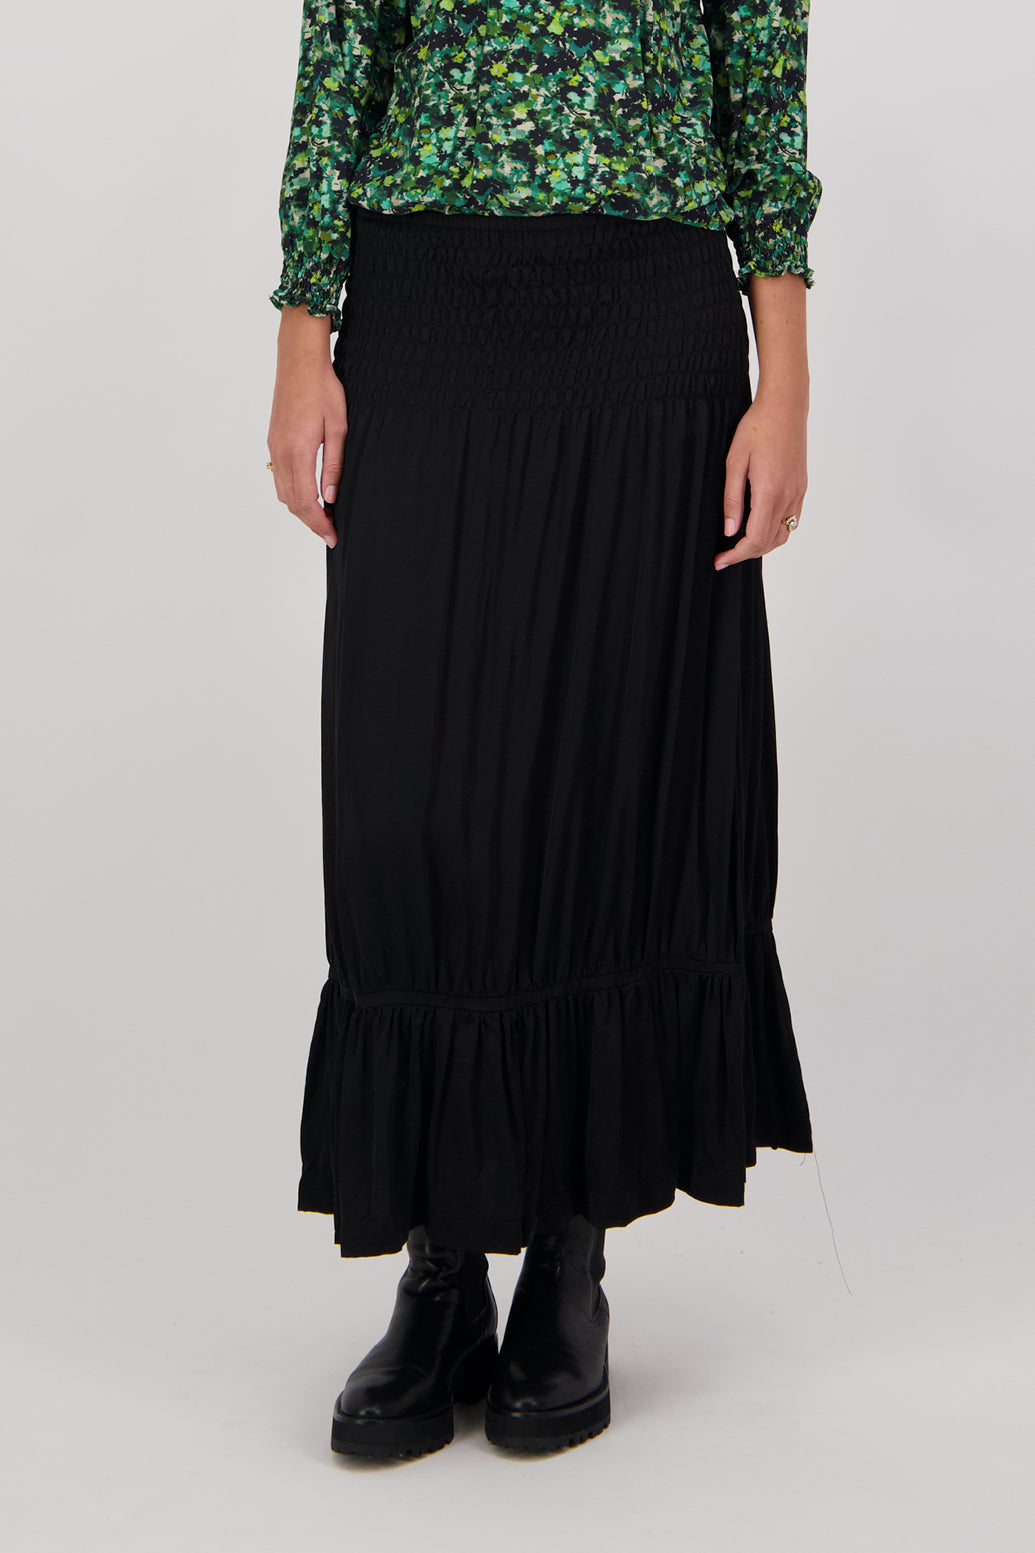 Christel Black Skirt